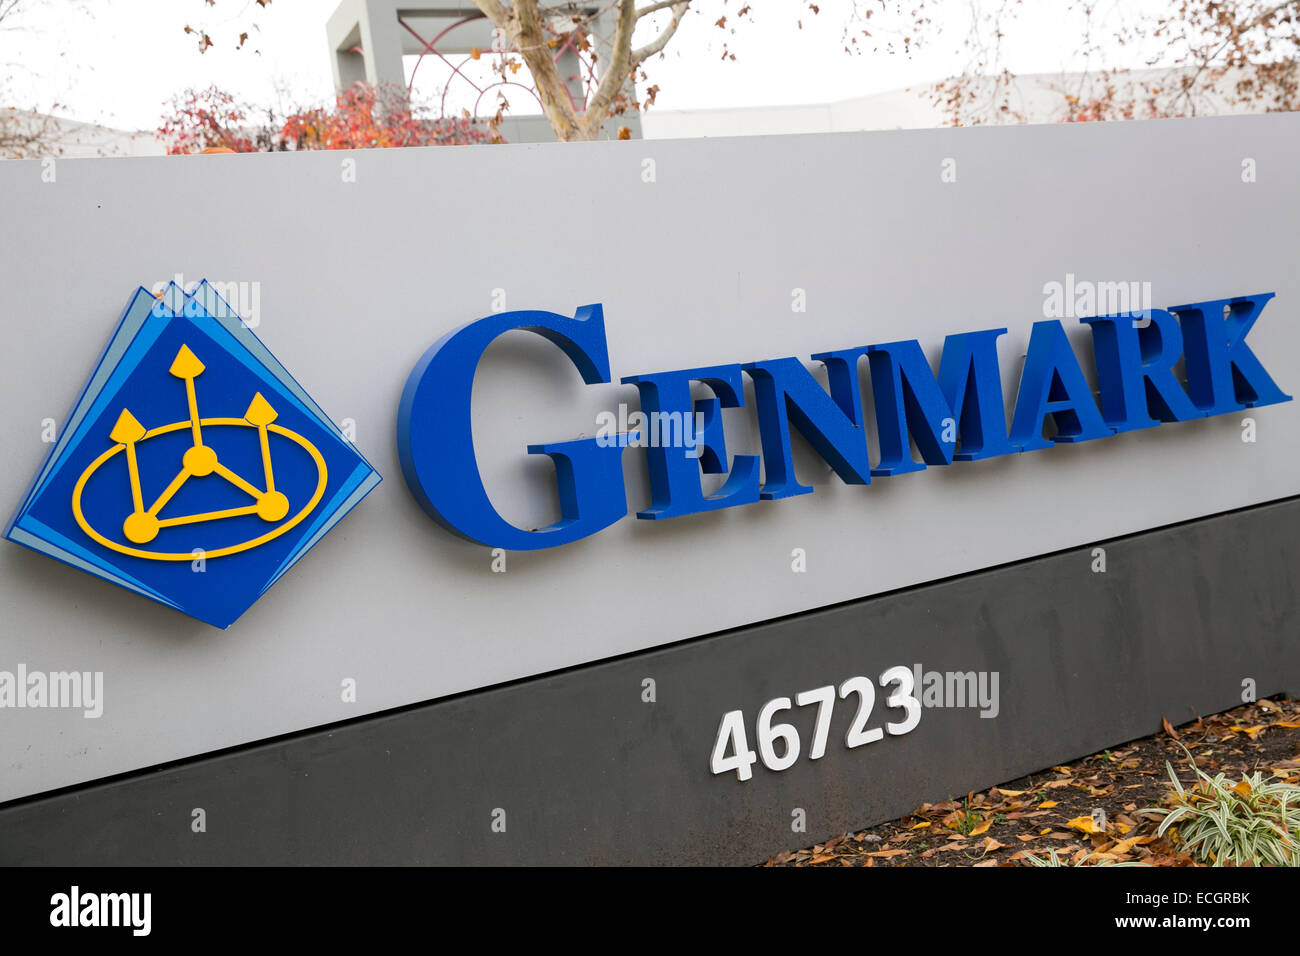 Der Hauptsitz der Genmark Automatisierung. Stockfoto